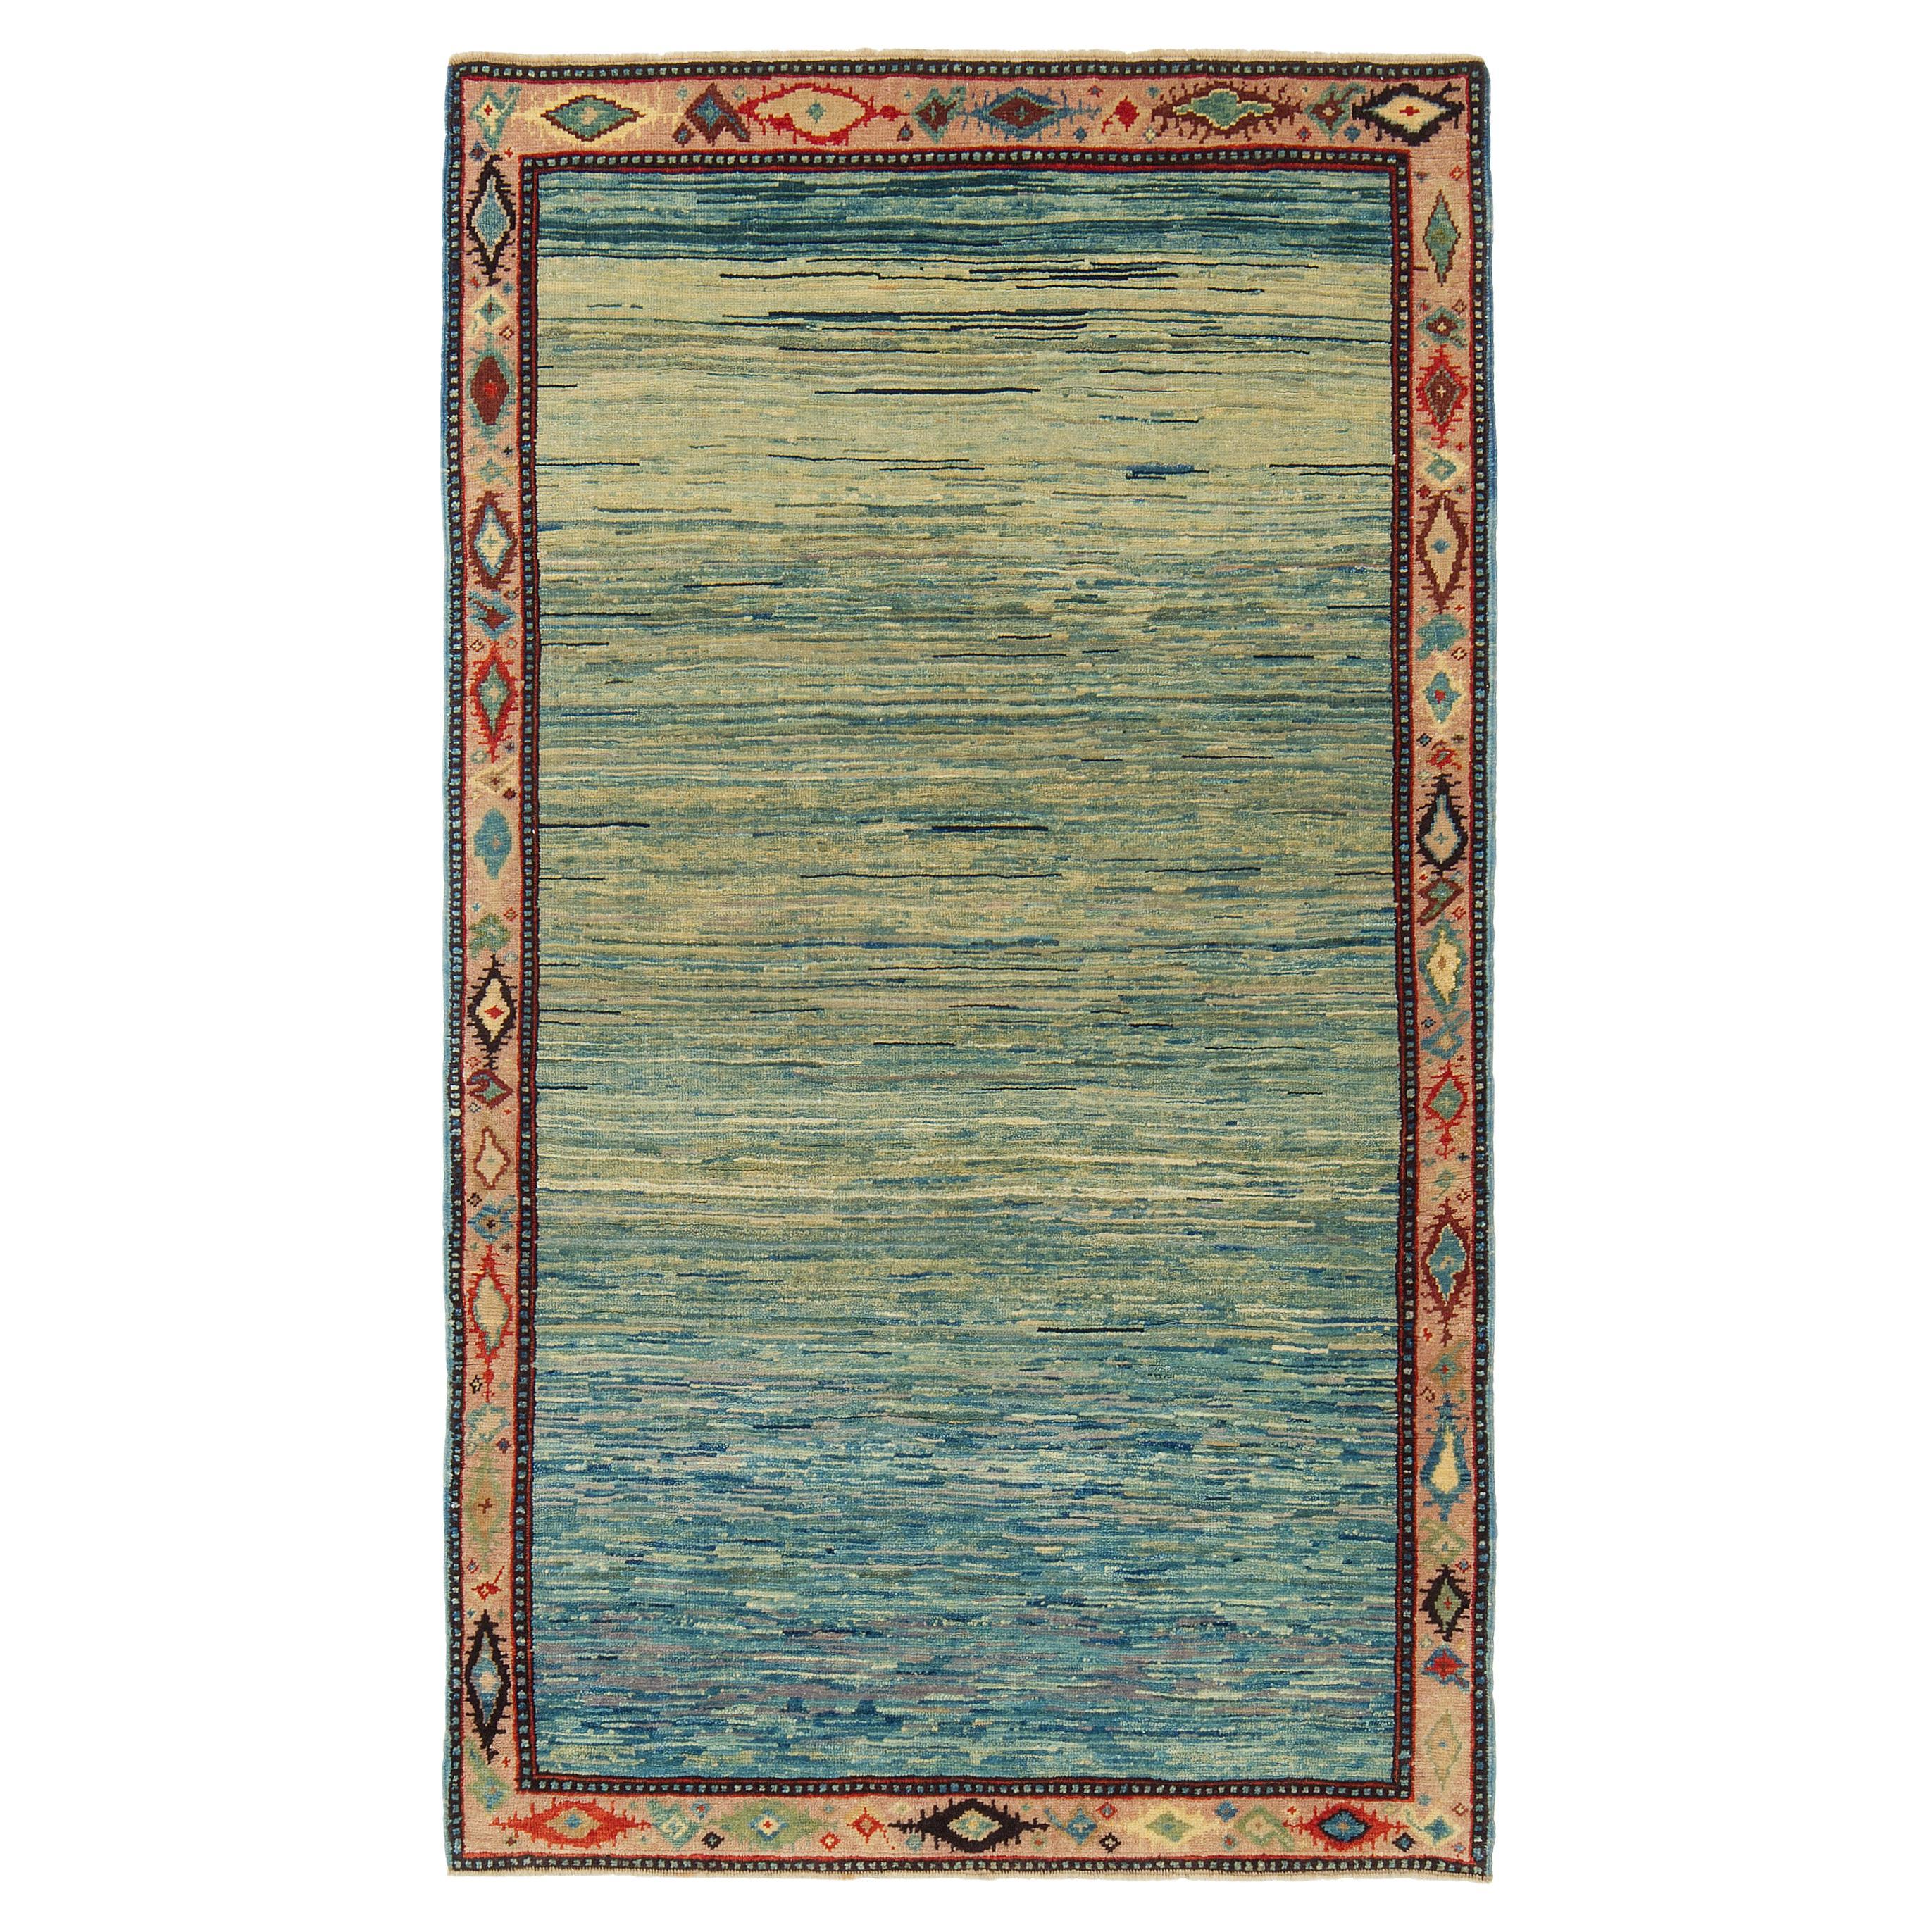 Tapis Ararat - Le tapis de couleur bleue - Tapis moderne teinté naturel